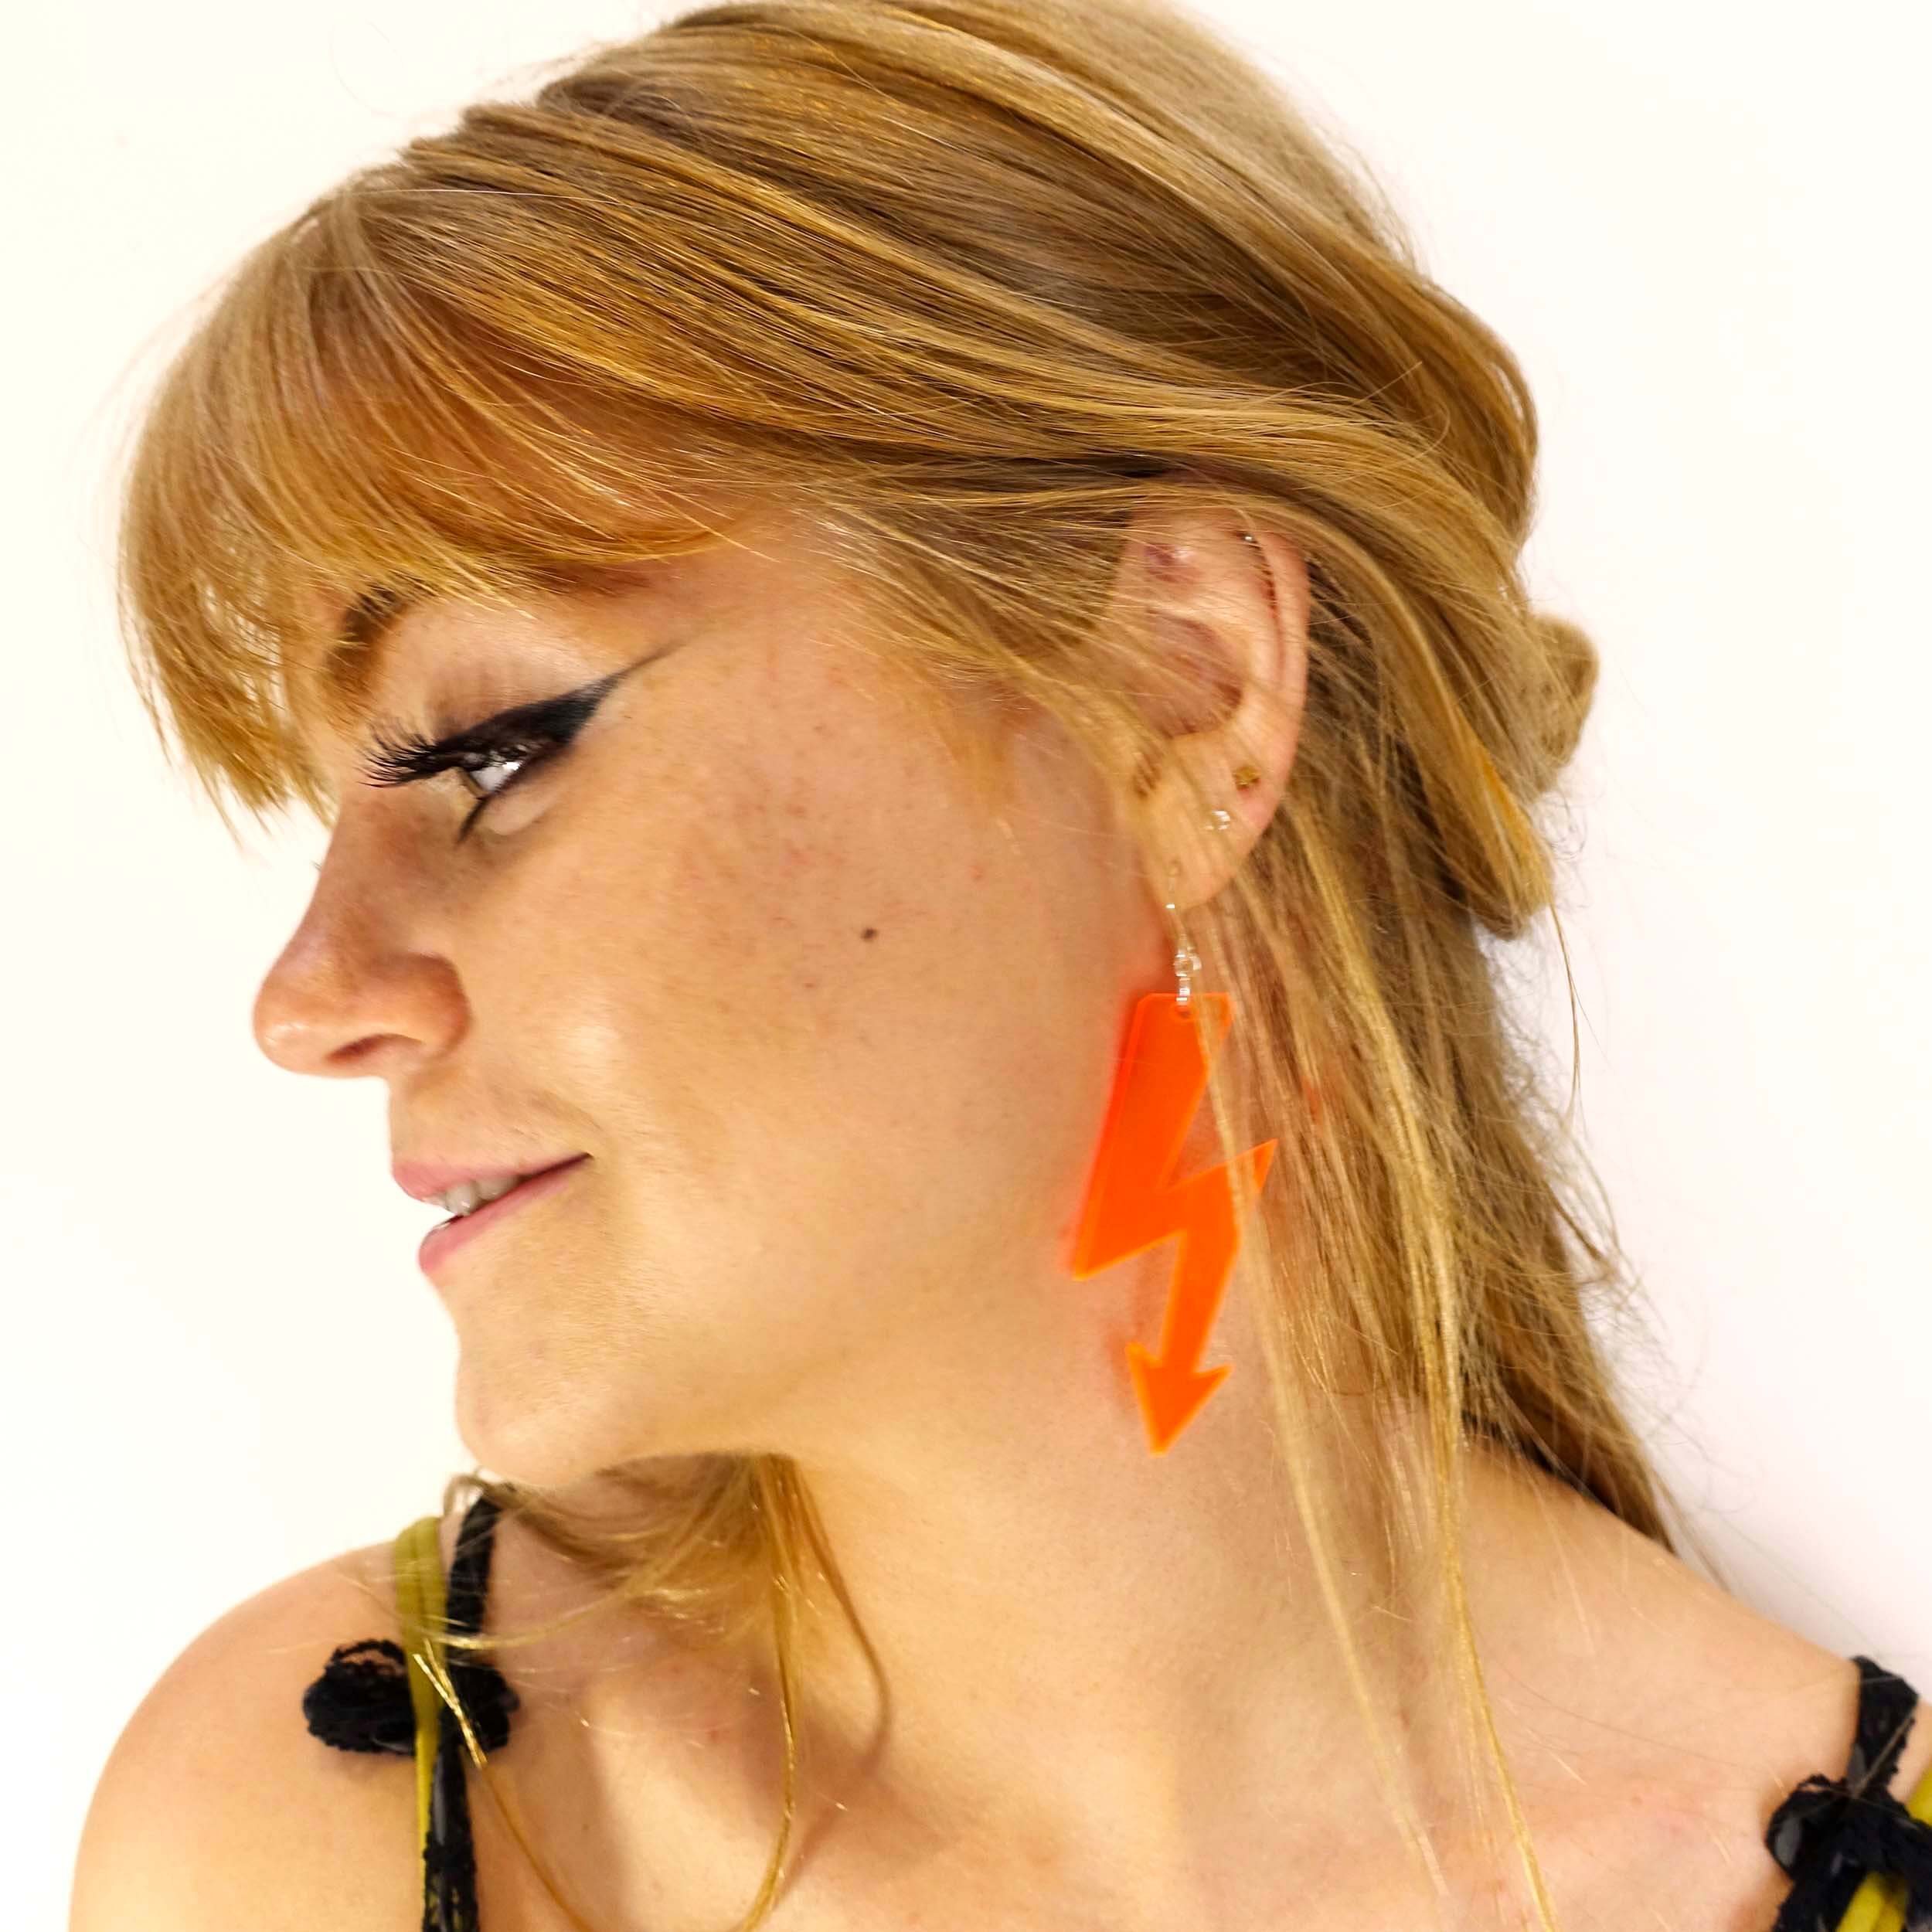 Eliza wears orange high voltage earrings.